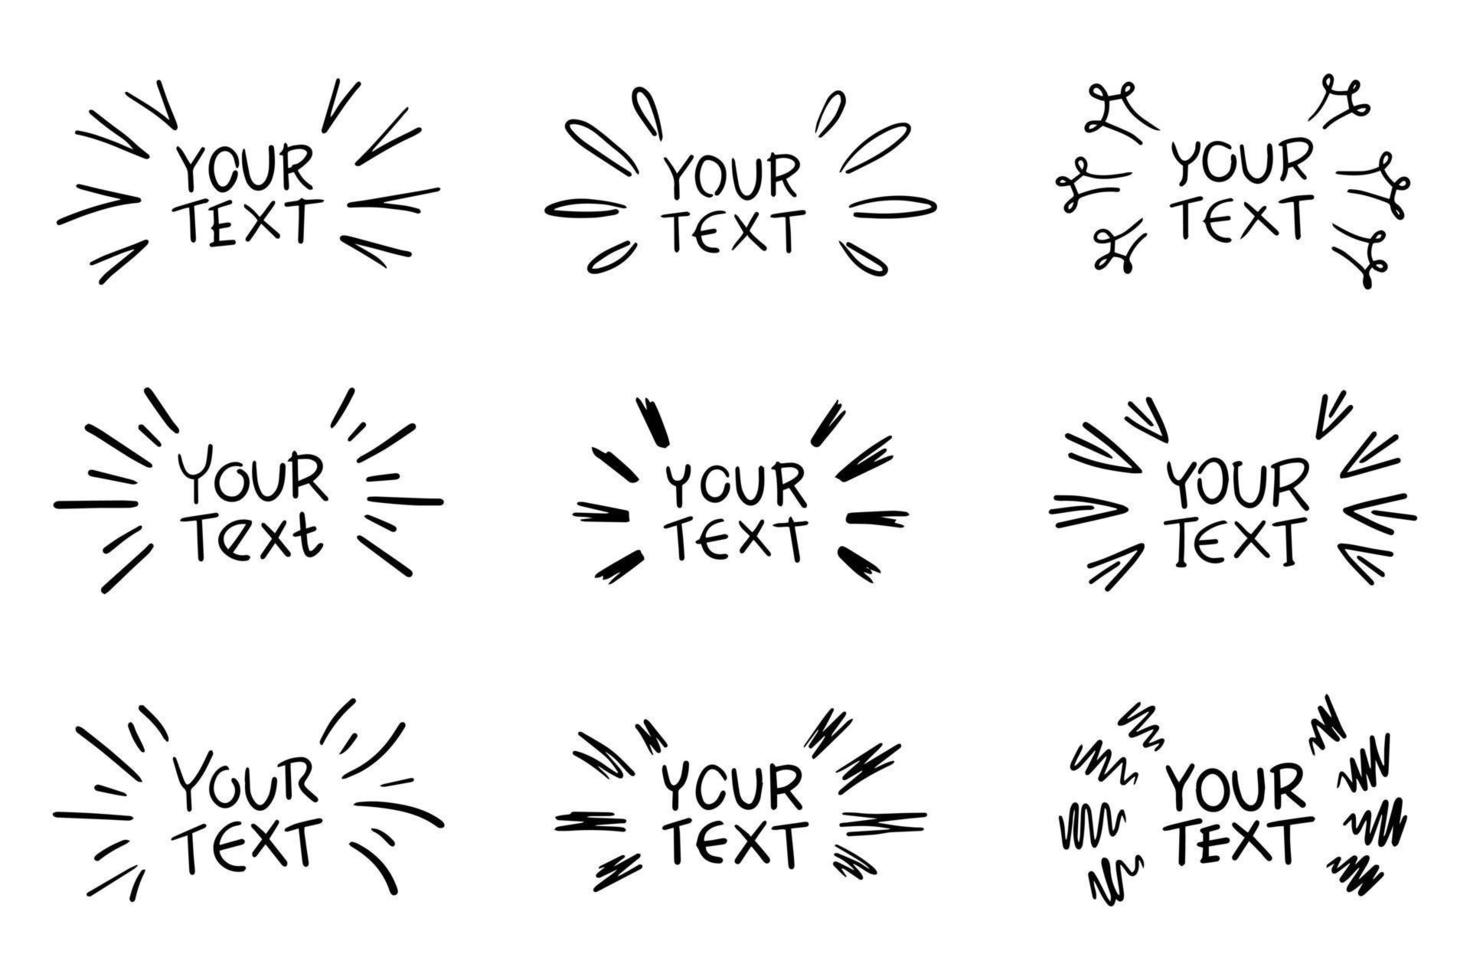 elementos desenhados à mão e doodle para texto de ênfase em estilo cômico vetor